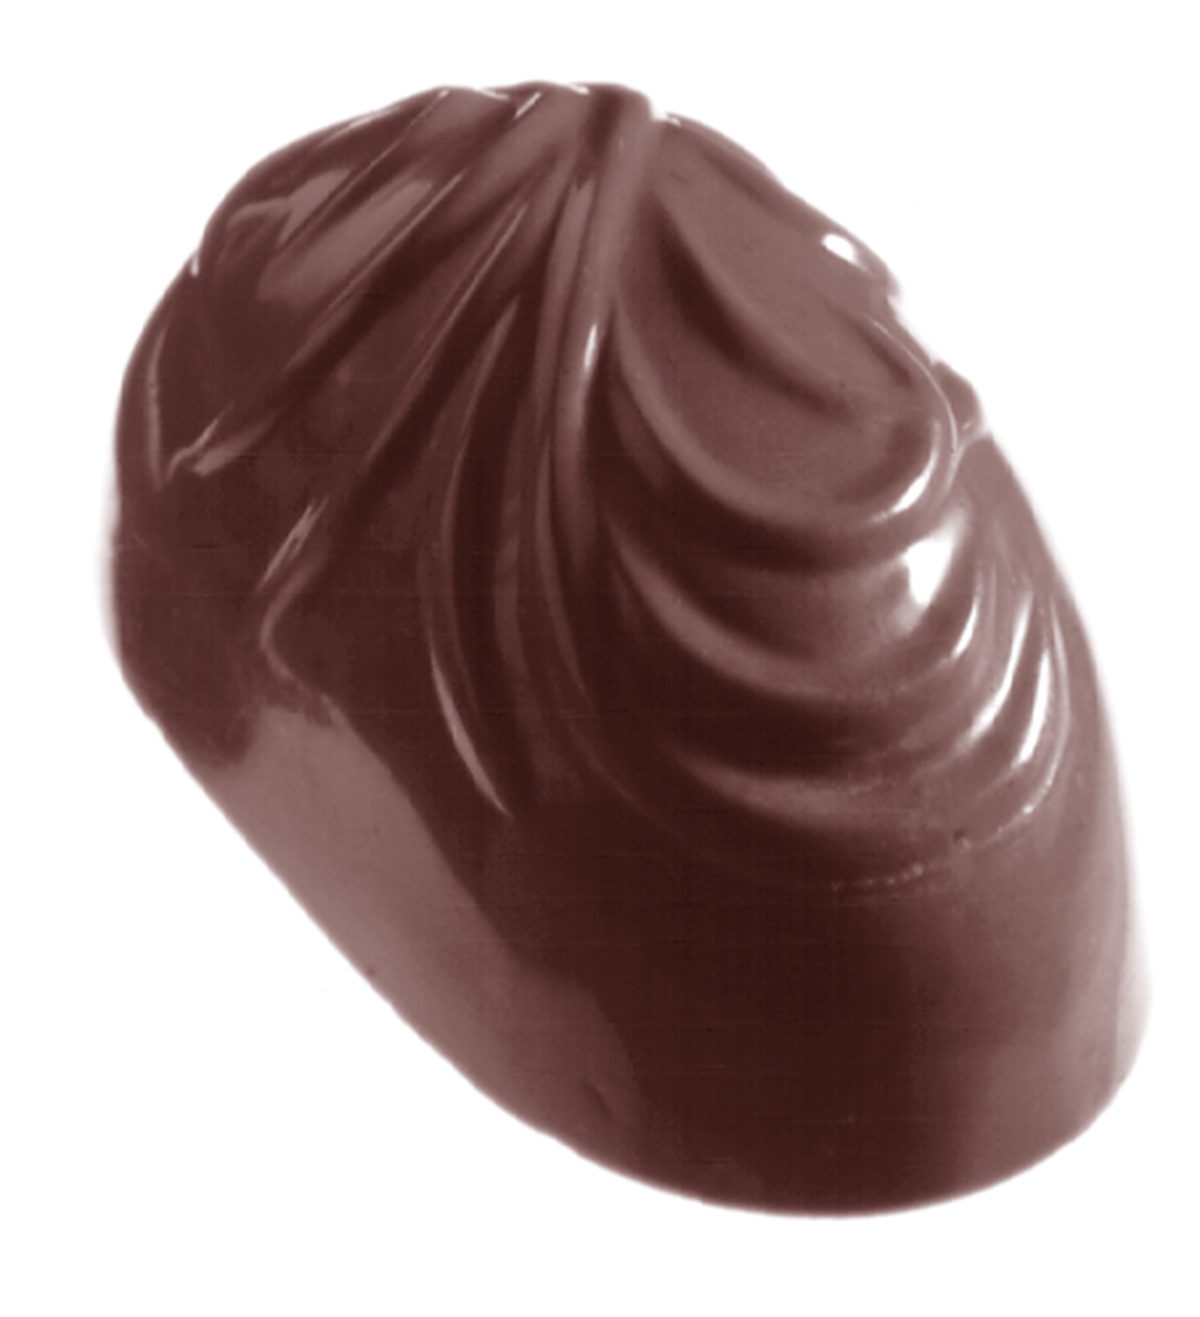 Professionel chokoladeform i polycarbonat - Feather CW1222